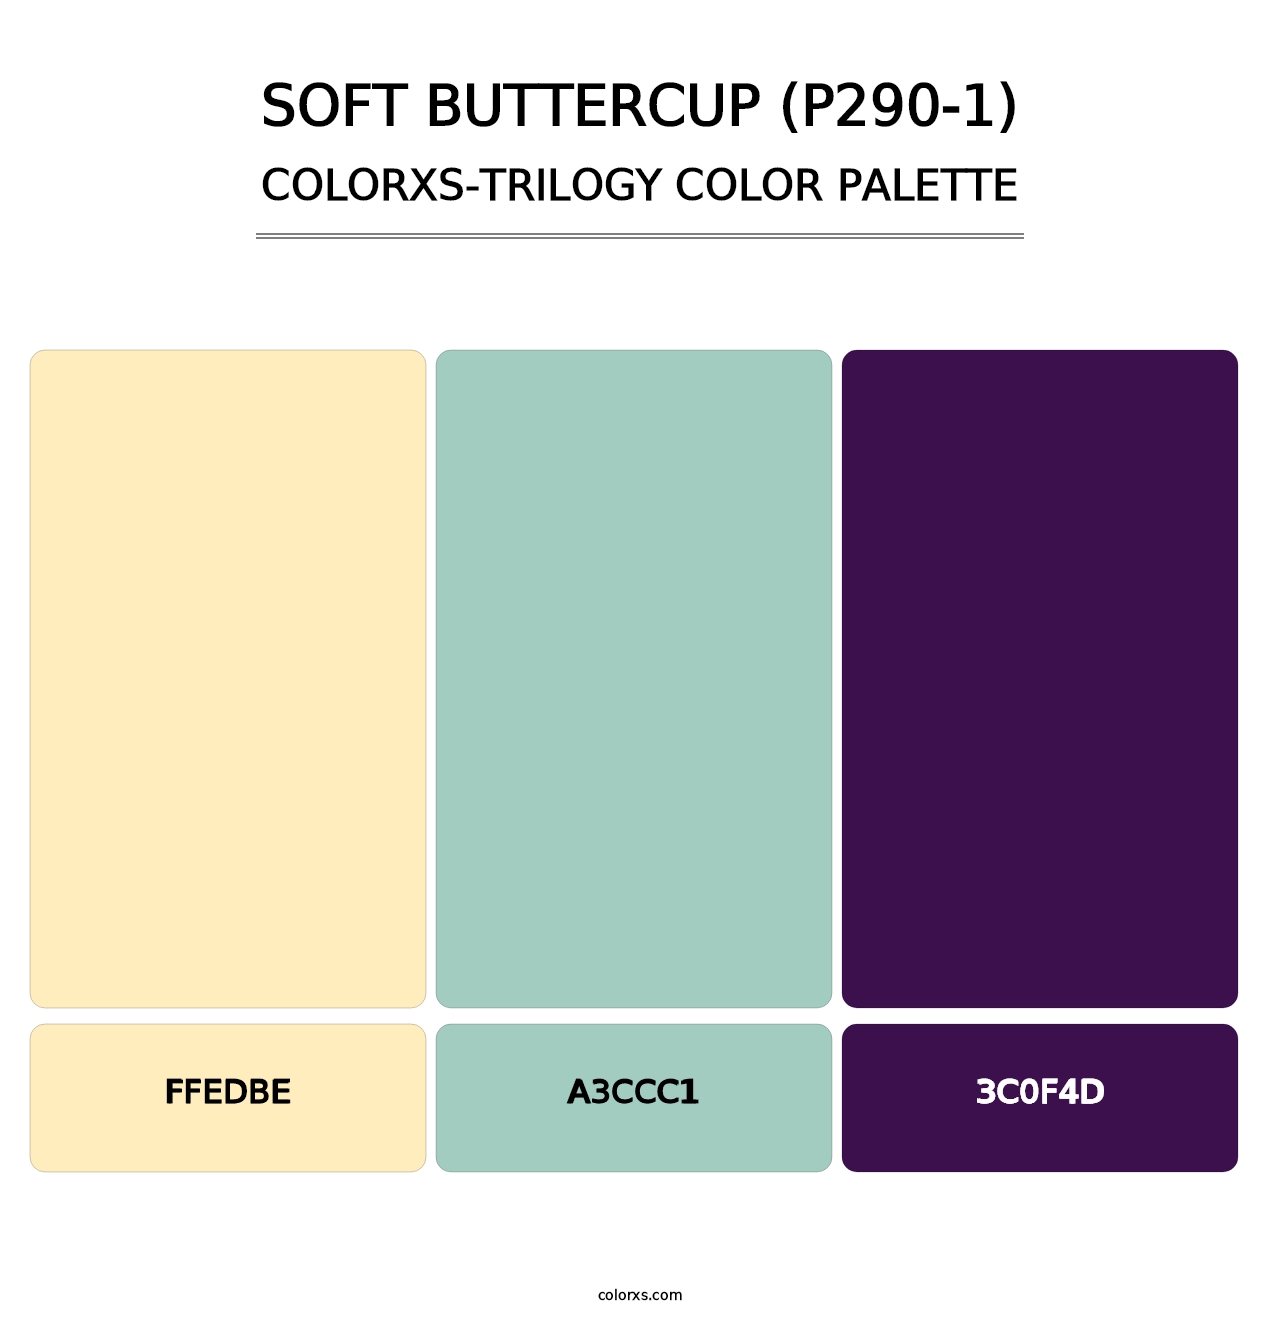 Soft Buttercup (P290-1) - Colorxs Trilogy Palette